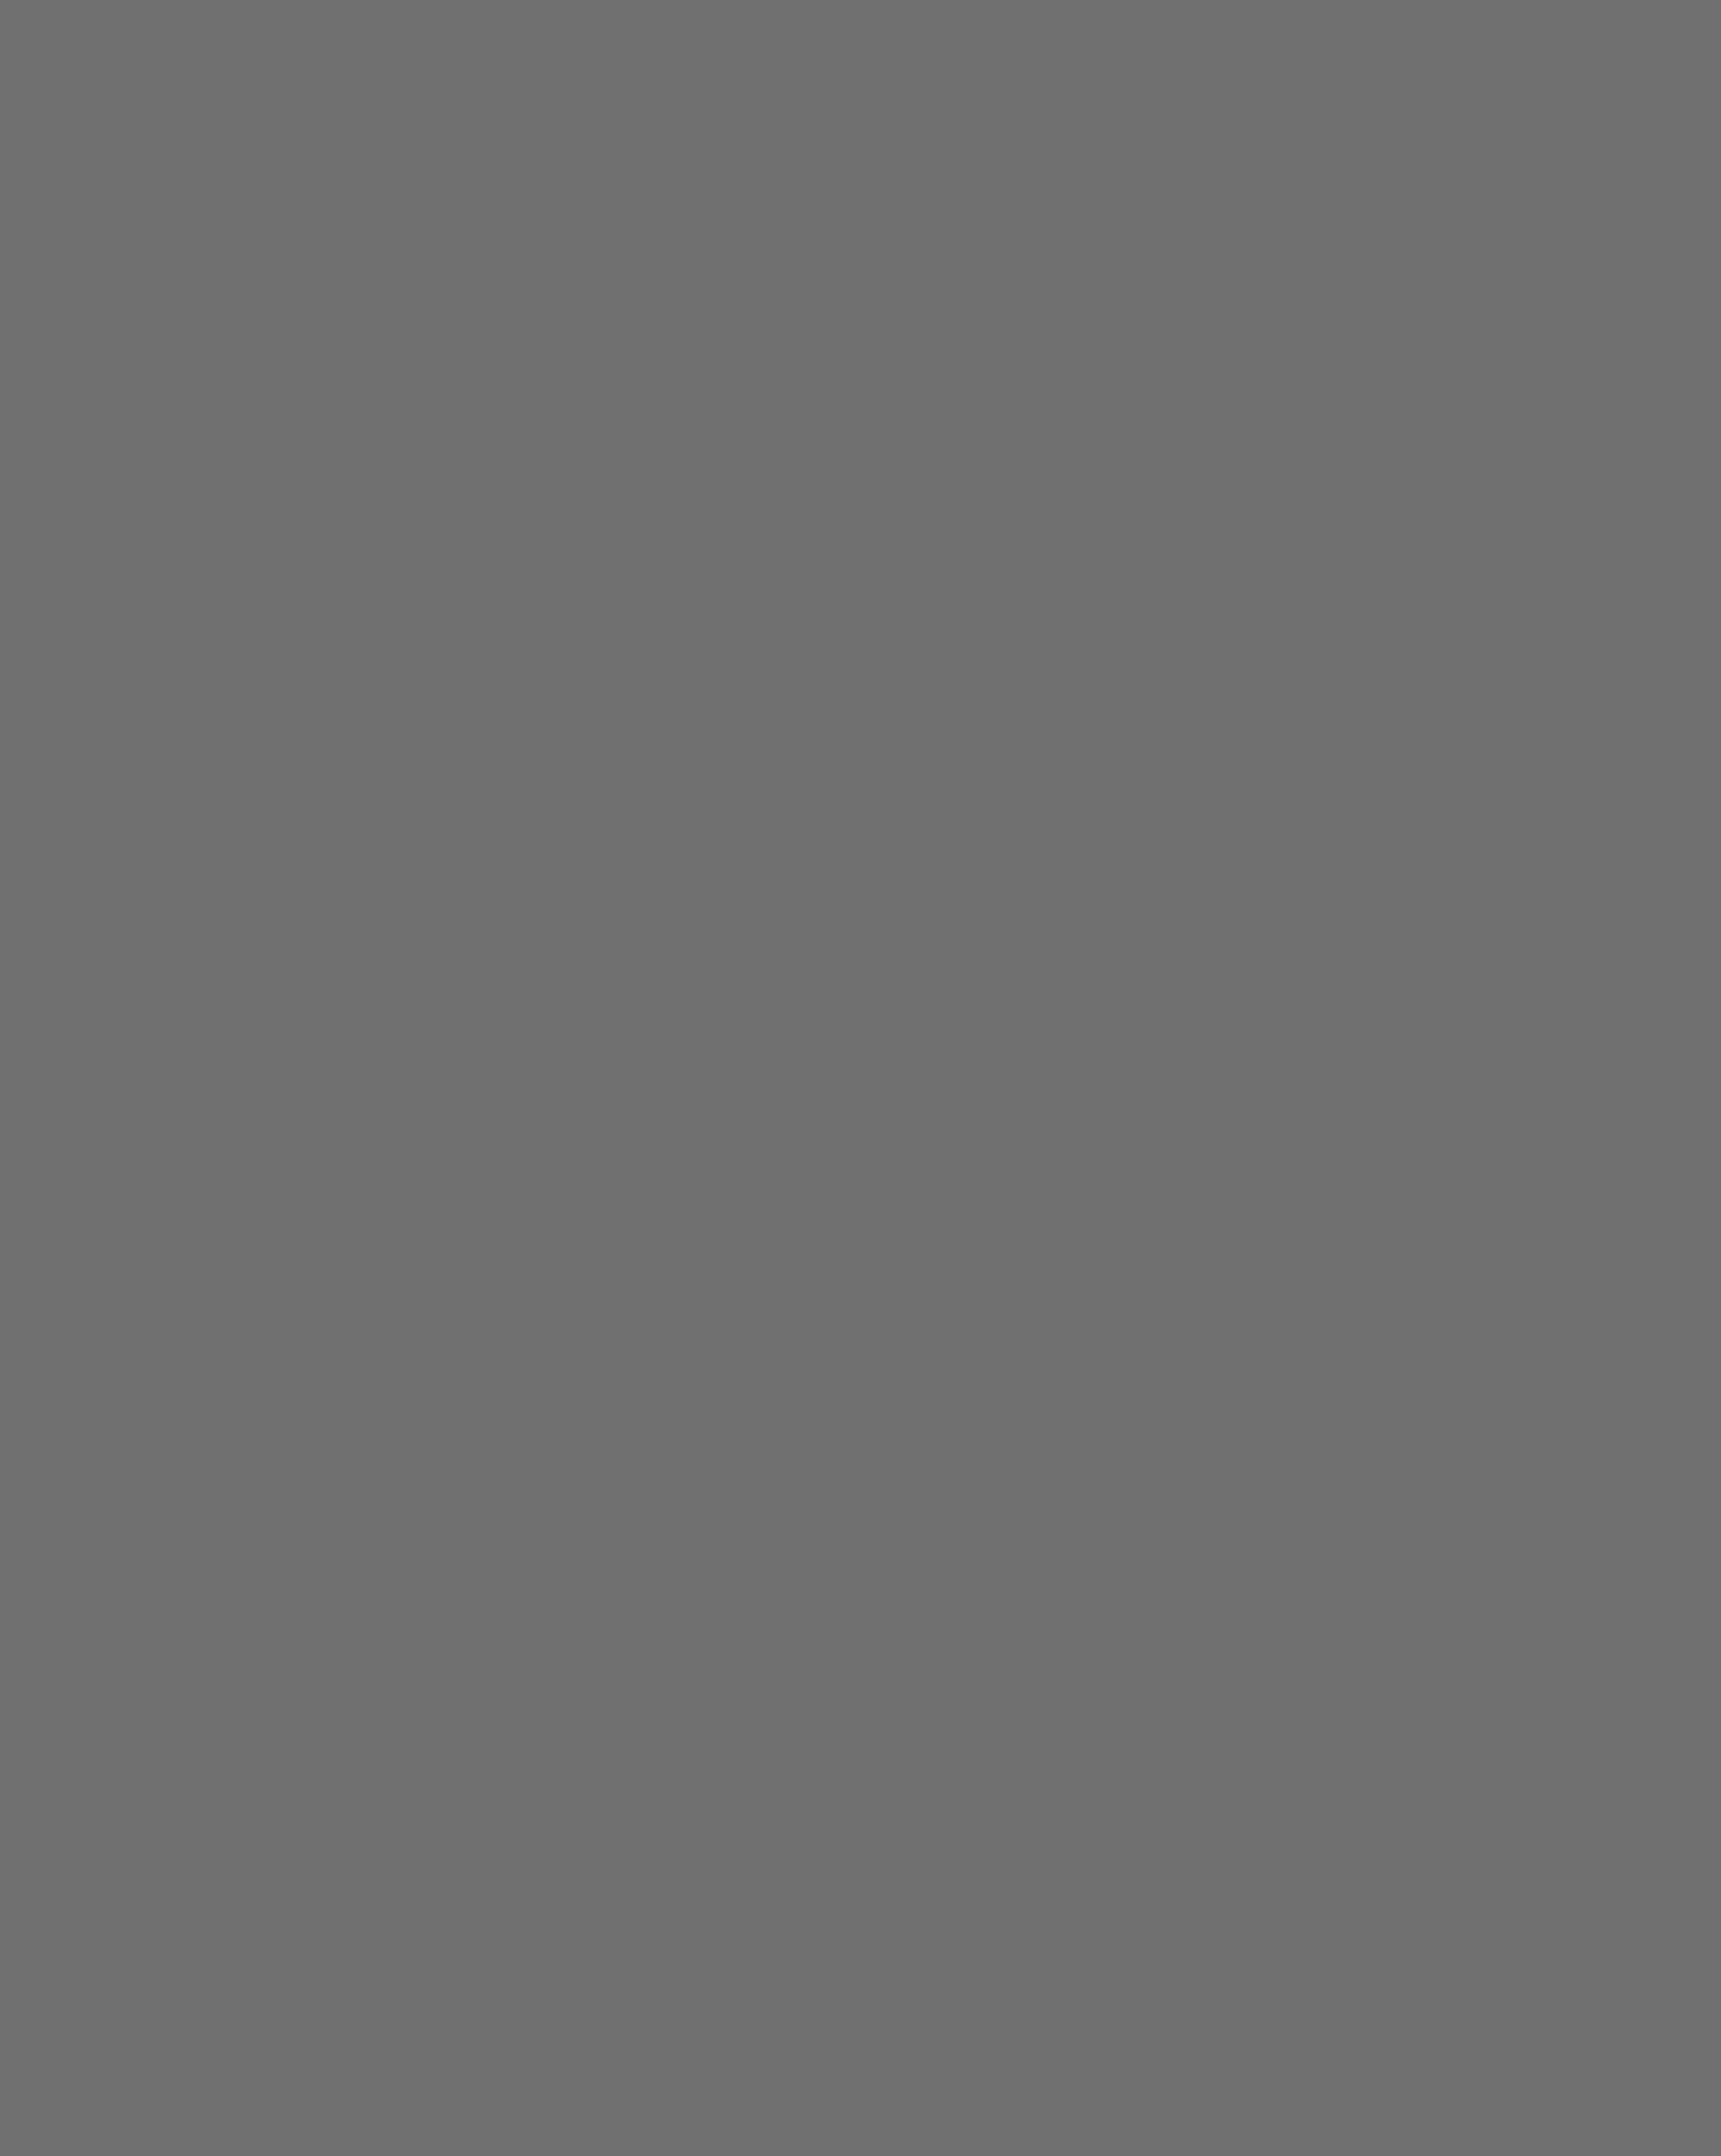 Сергей Дягилев (справа) и финансовый контролер Метрополитен-оперы Джон Браун. Нью-Йорк, США, 1911 год. Иллюстрация из книги Шенга Схейена «Сергей Дягилев. «Русские сезоны» навсегда». Москва: издательство «КоЛибри», 2022